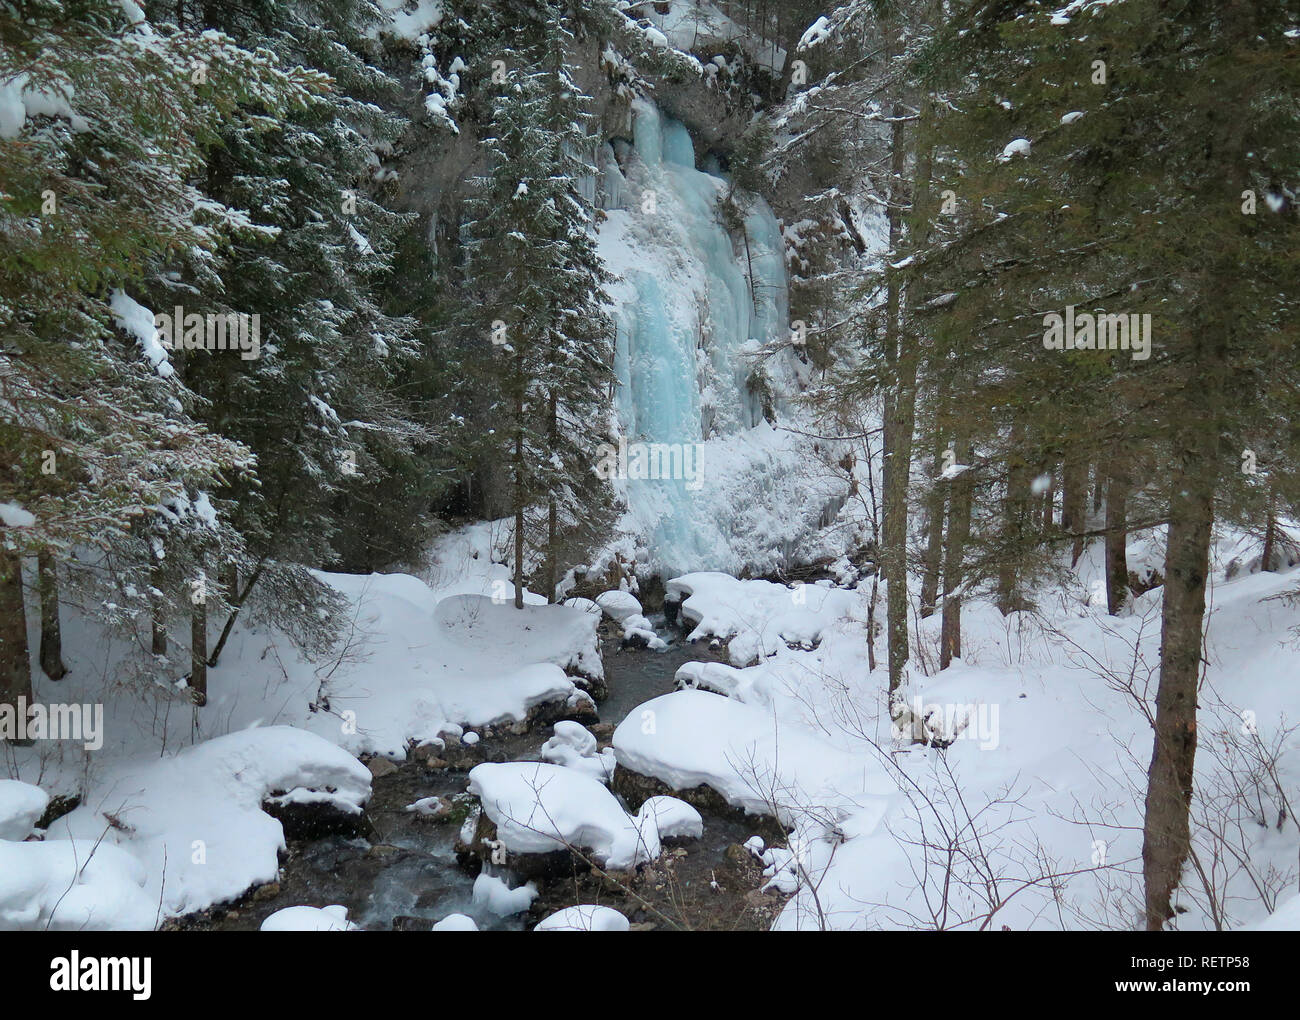 Cascata di ghiaccio, Serrai di Sottoguda gorge, Dolomiti, Italia Foto stock  - Alamy